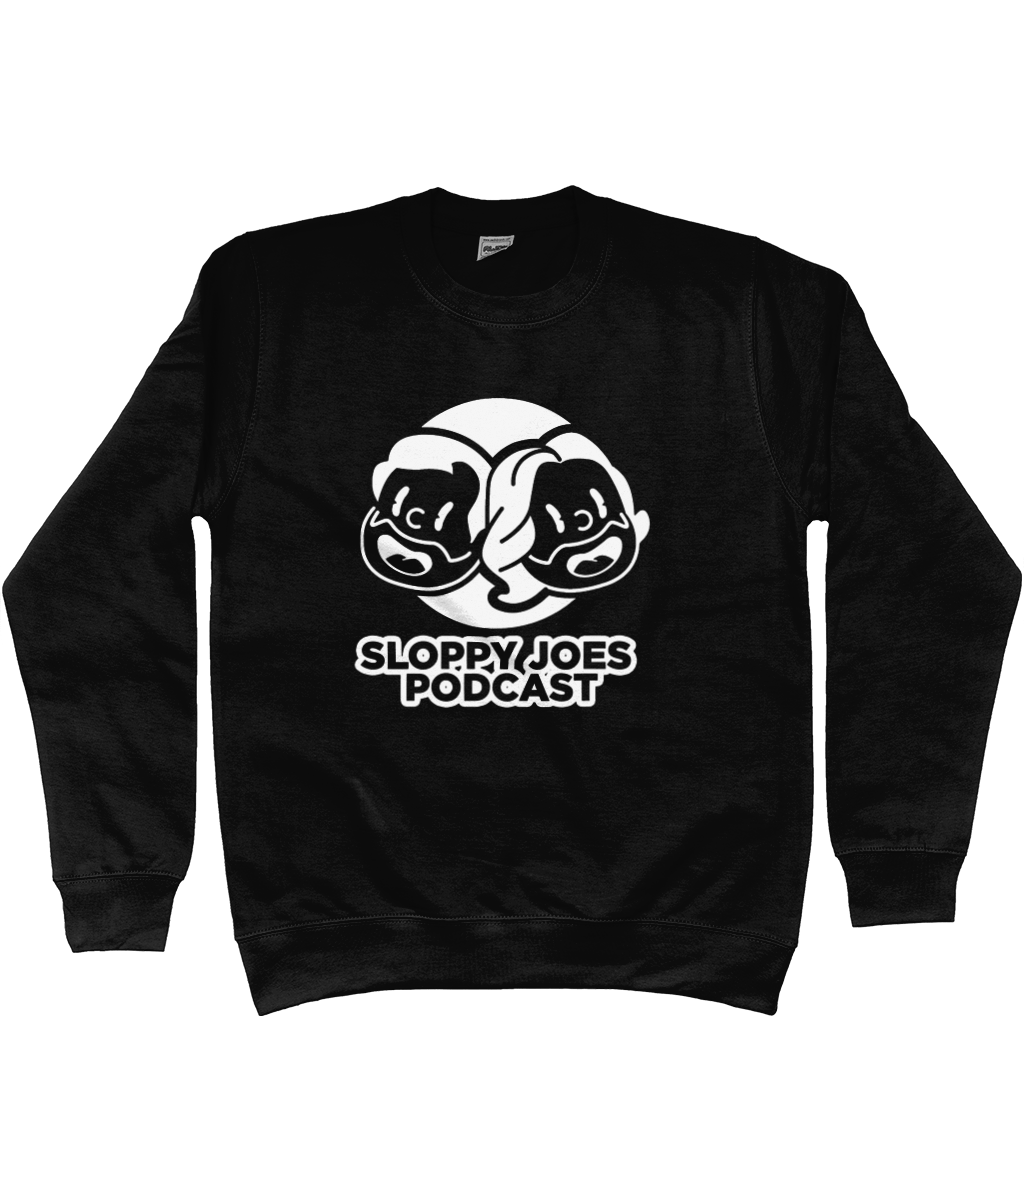 The Sloppy Joes Sweatshirt